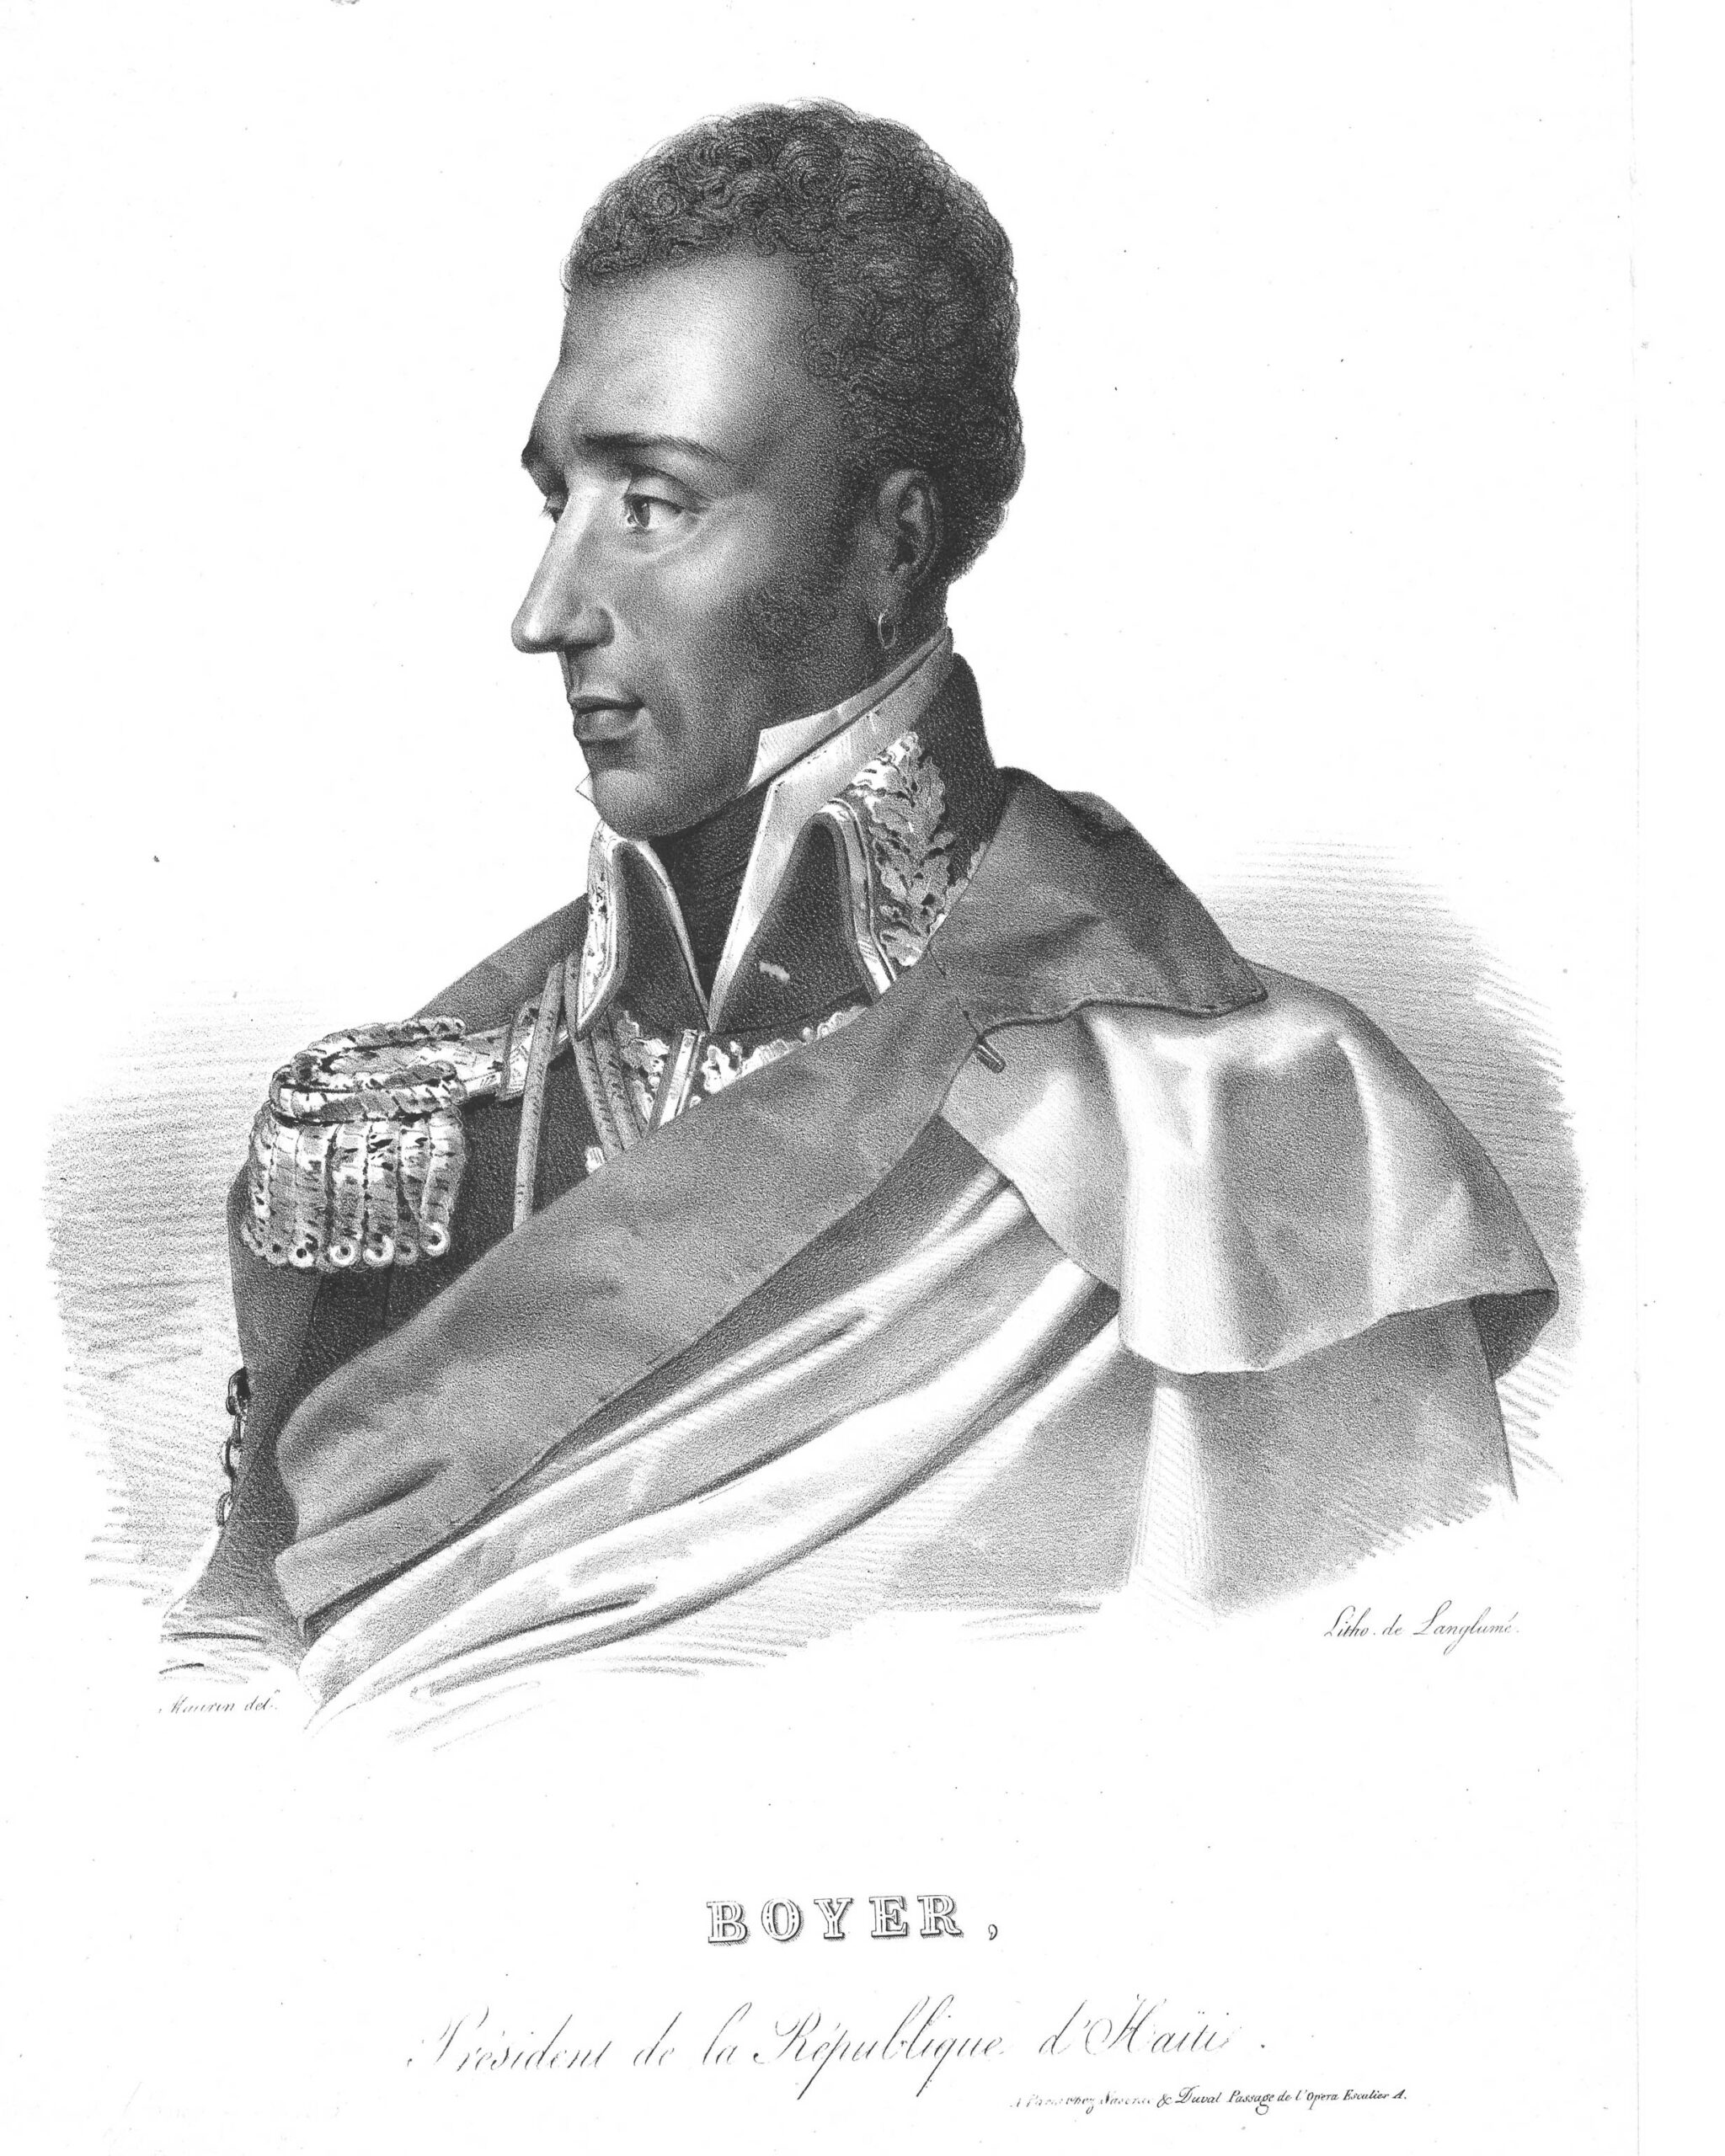 Antoine Maurin (1793-1860), "Boyer, Président de la République d’Haïti," 19th century, engraving, 10 3/4 x 8 in., collection of Dr. Fritz E. Daguillard